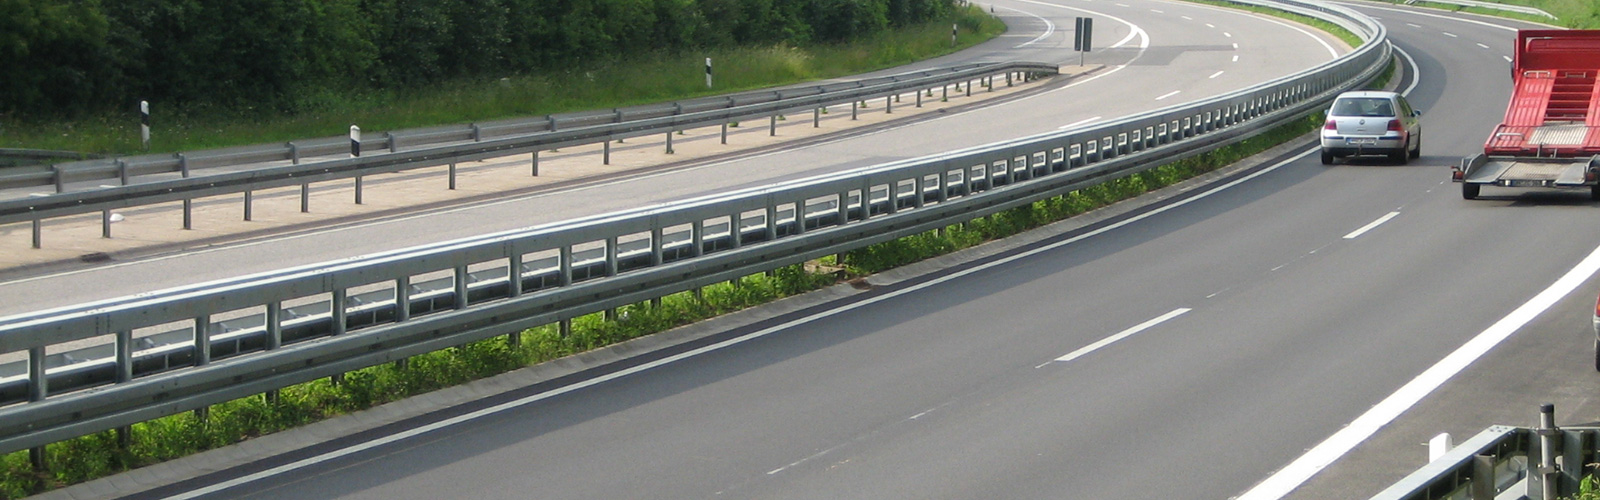 SUPER-RAIL - das ideale Rückhaltesystem für die Sicherheit. Bild zeigt Stahlschutzplanke im Mittelstreifen.